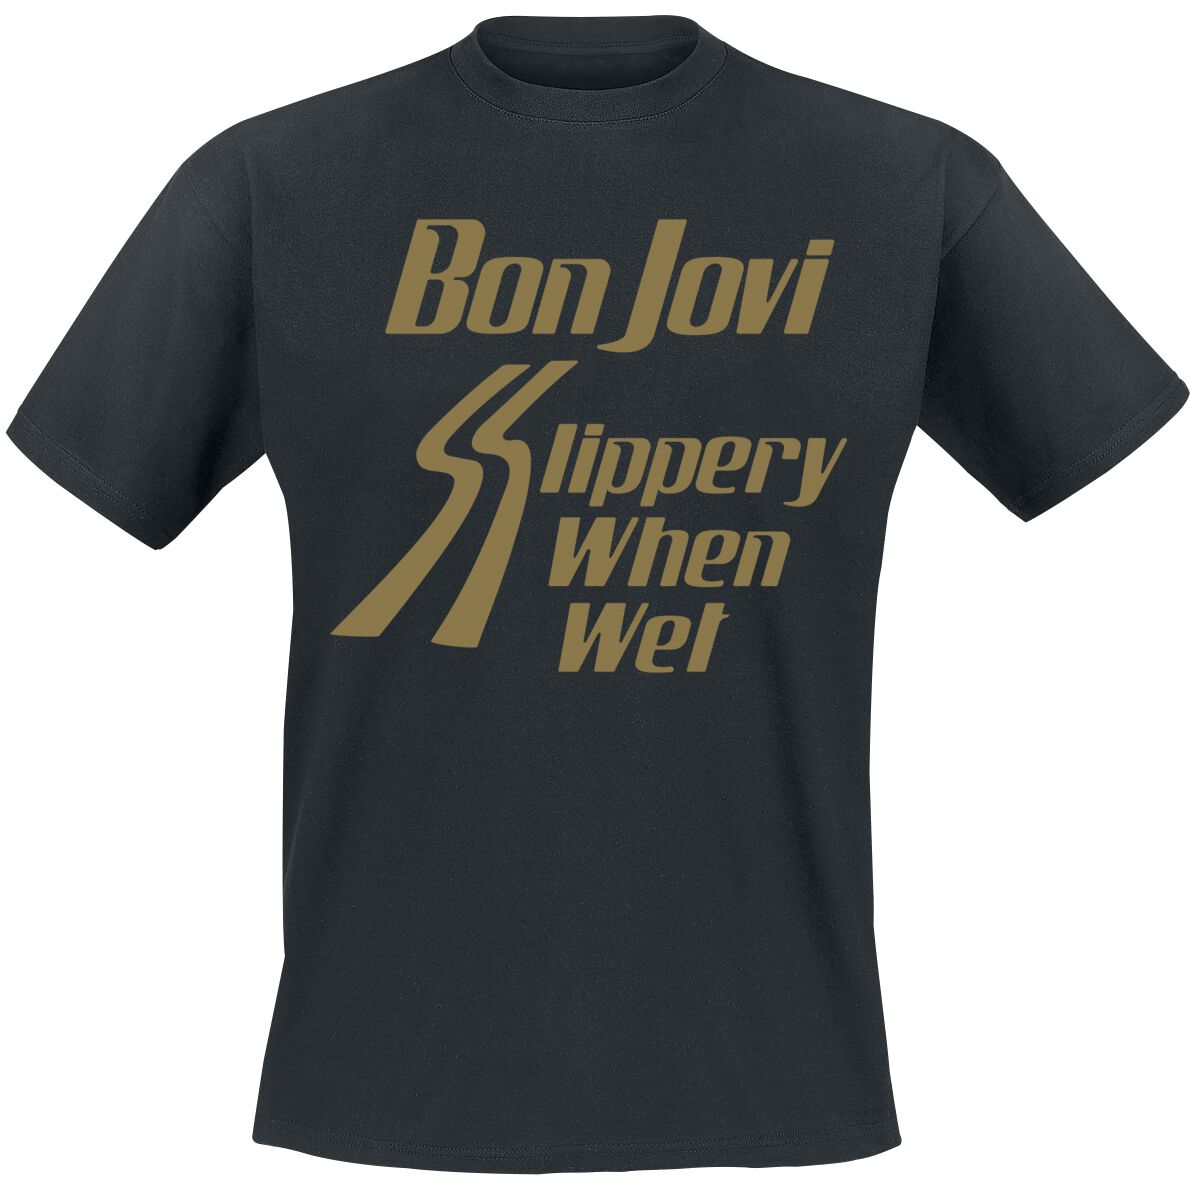 bon jovi t-shirt - slippery when wet - s bis 3xl - fÃ¼r mÃ¤nner - grÃ¶ÃŸe m - - lizenziertes merchandise! schwarz